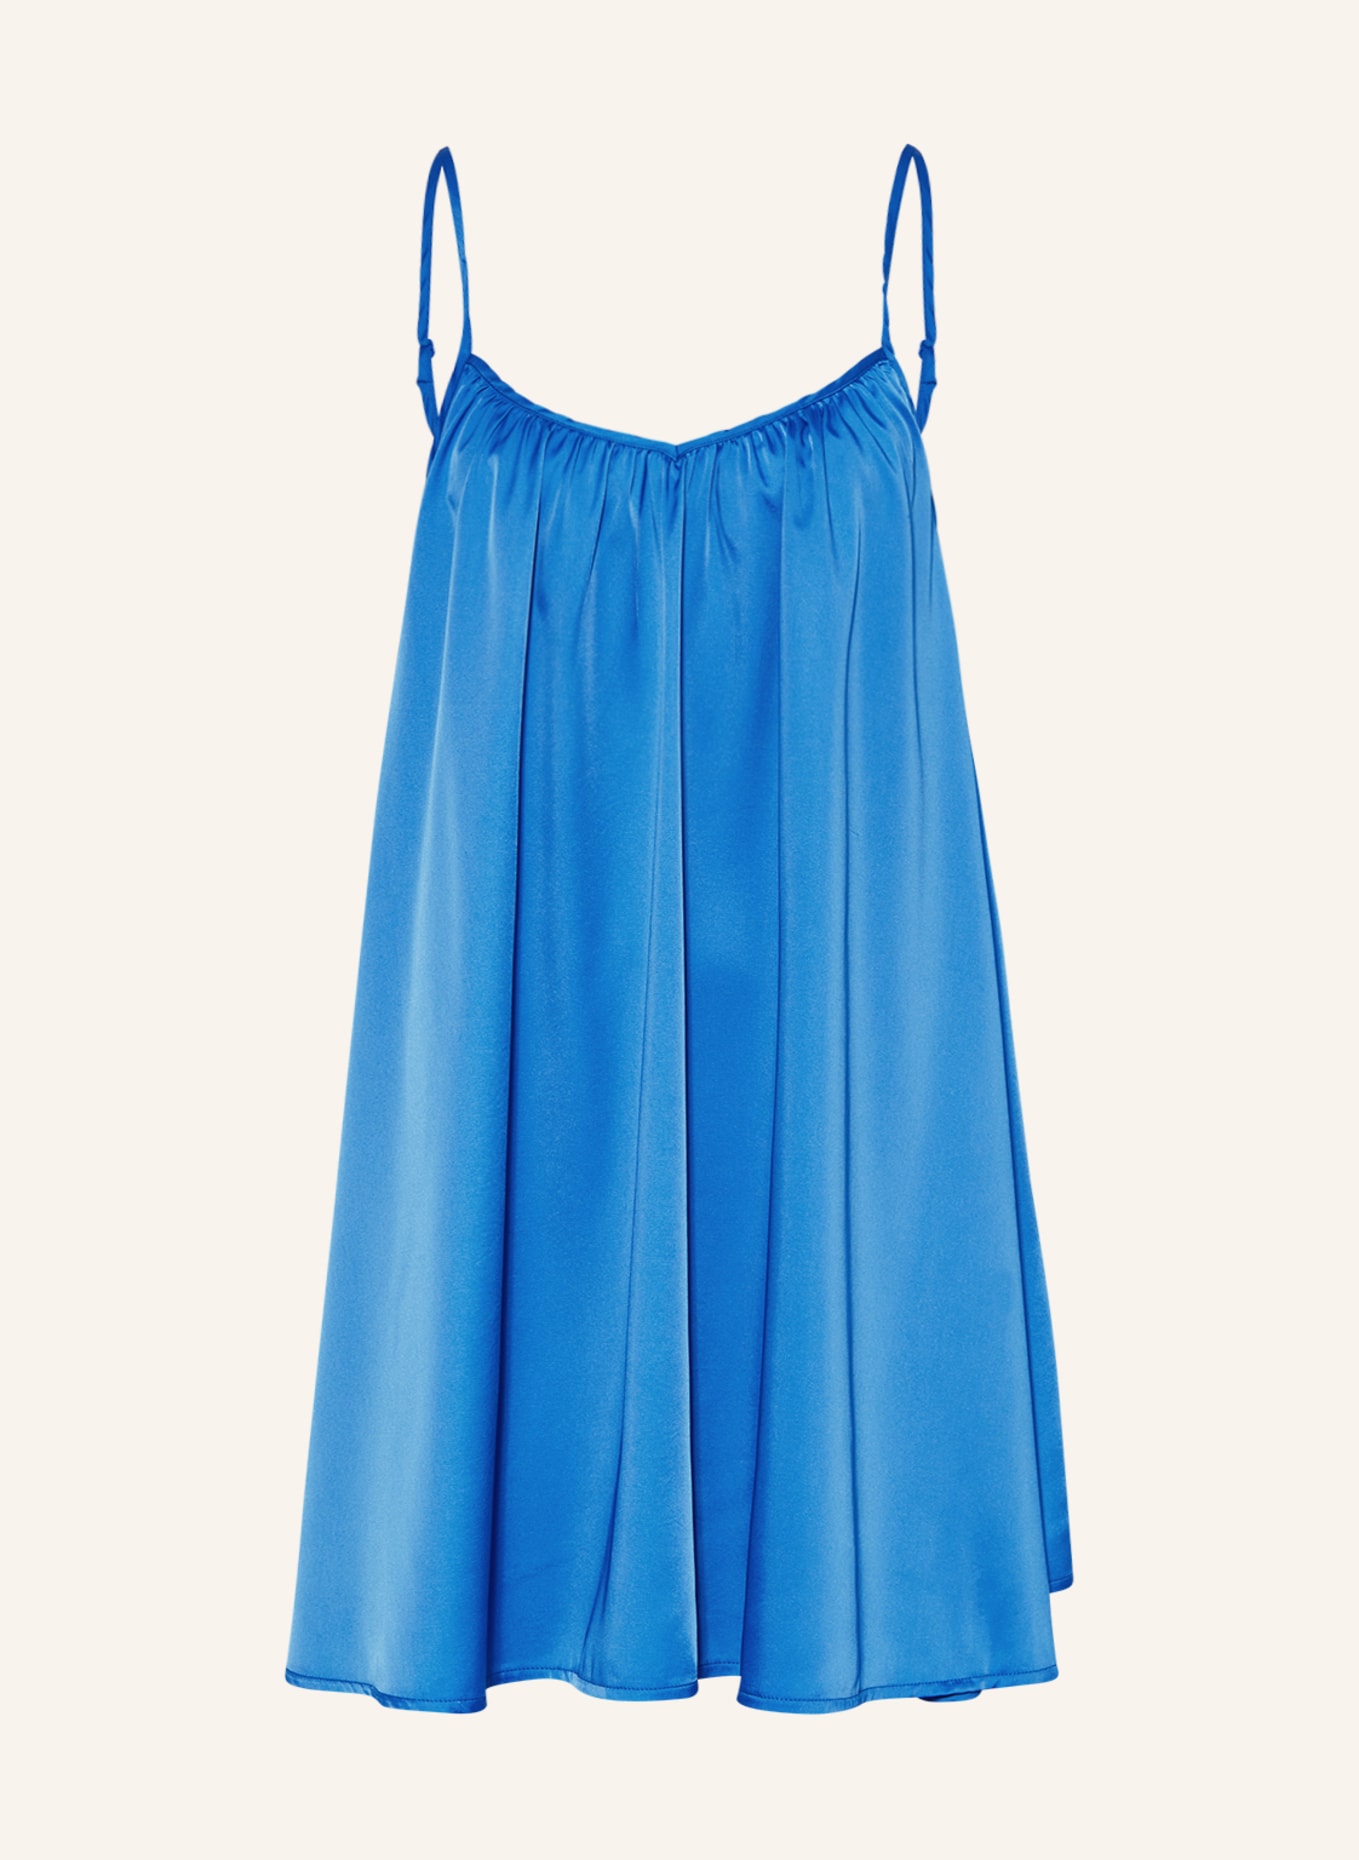 KARO KAUER Kleid, Farbe: BLAU (Bild 1)